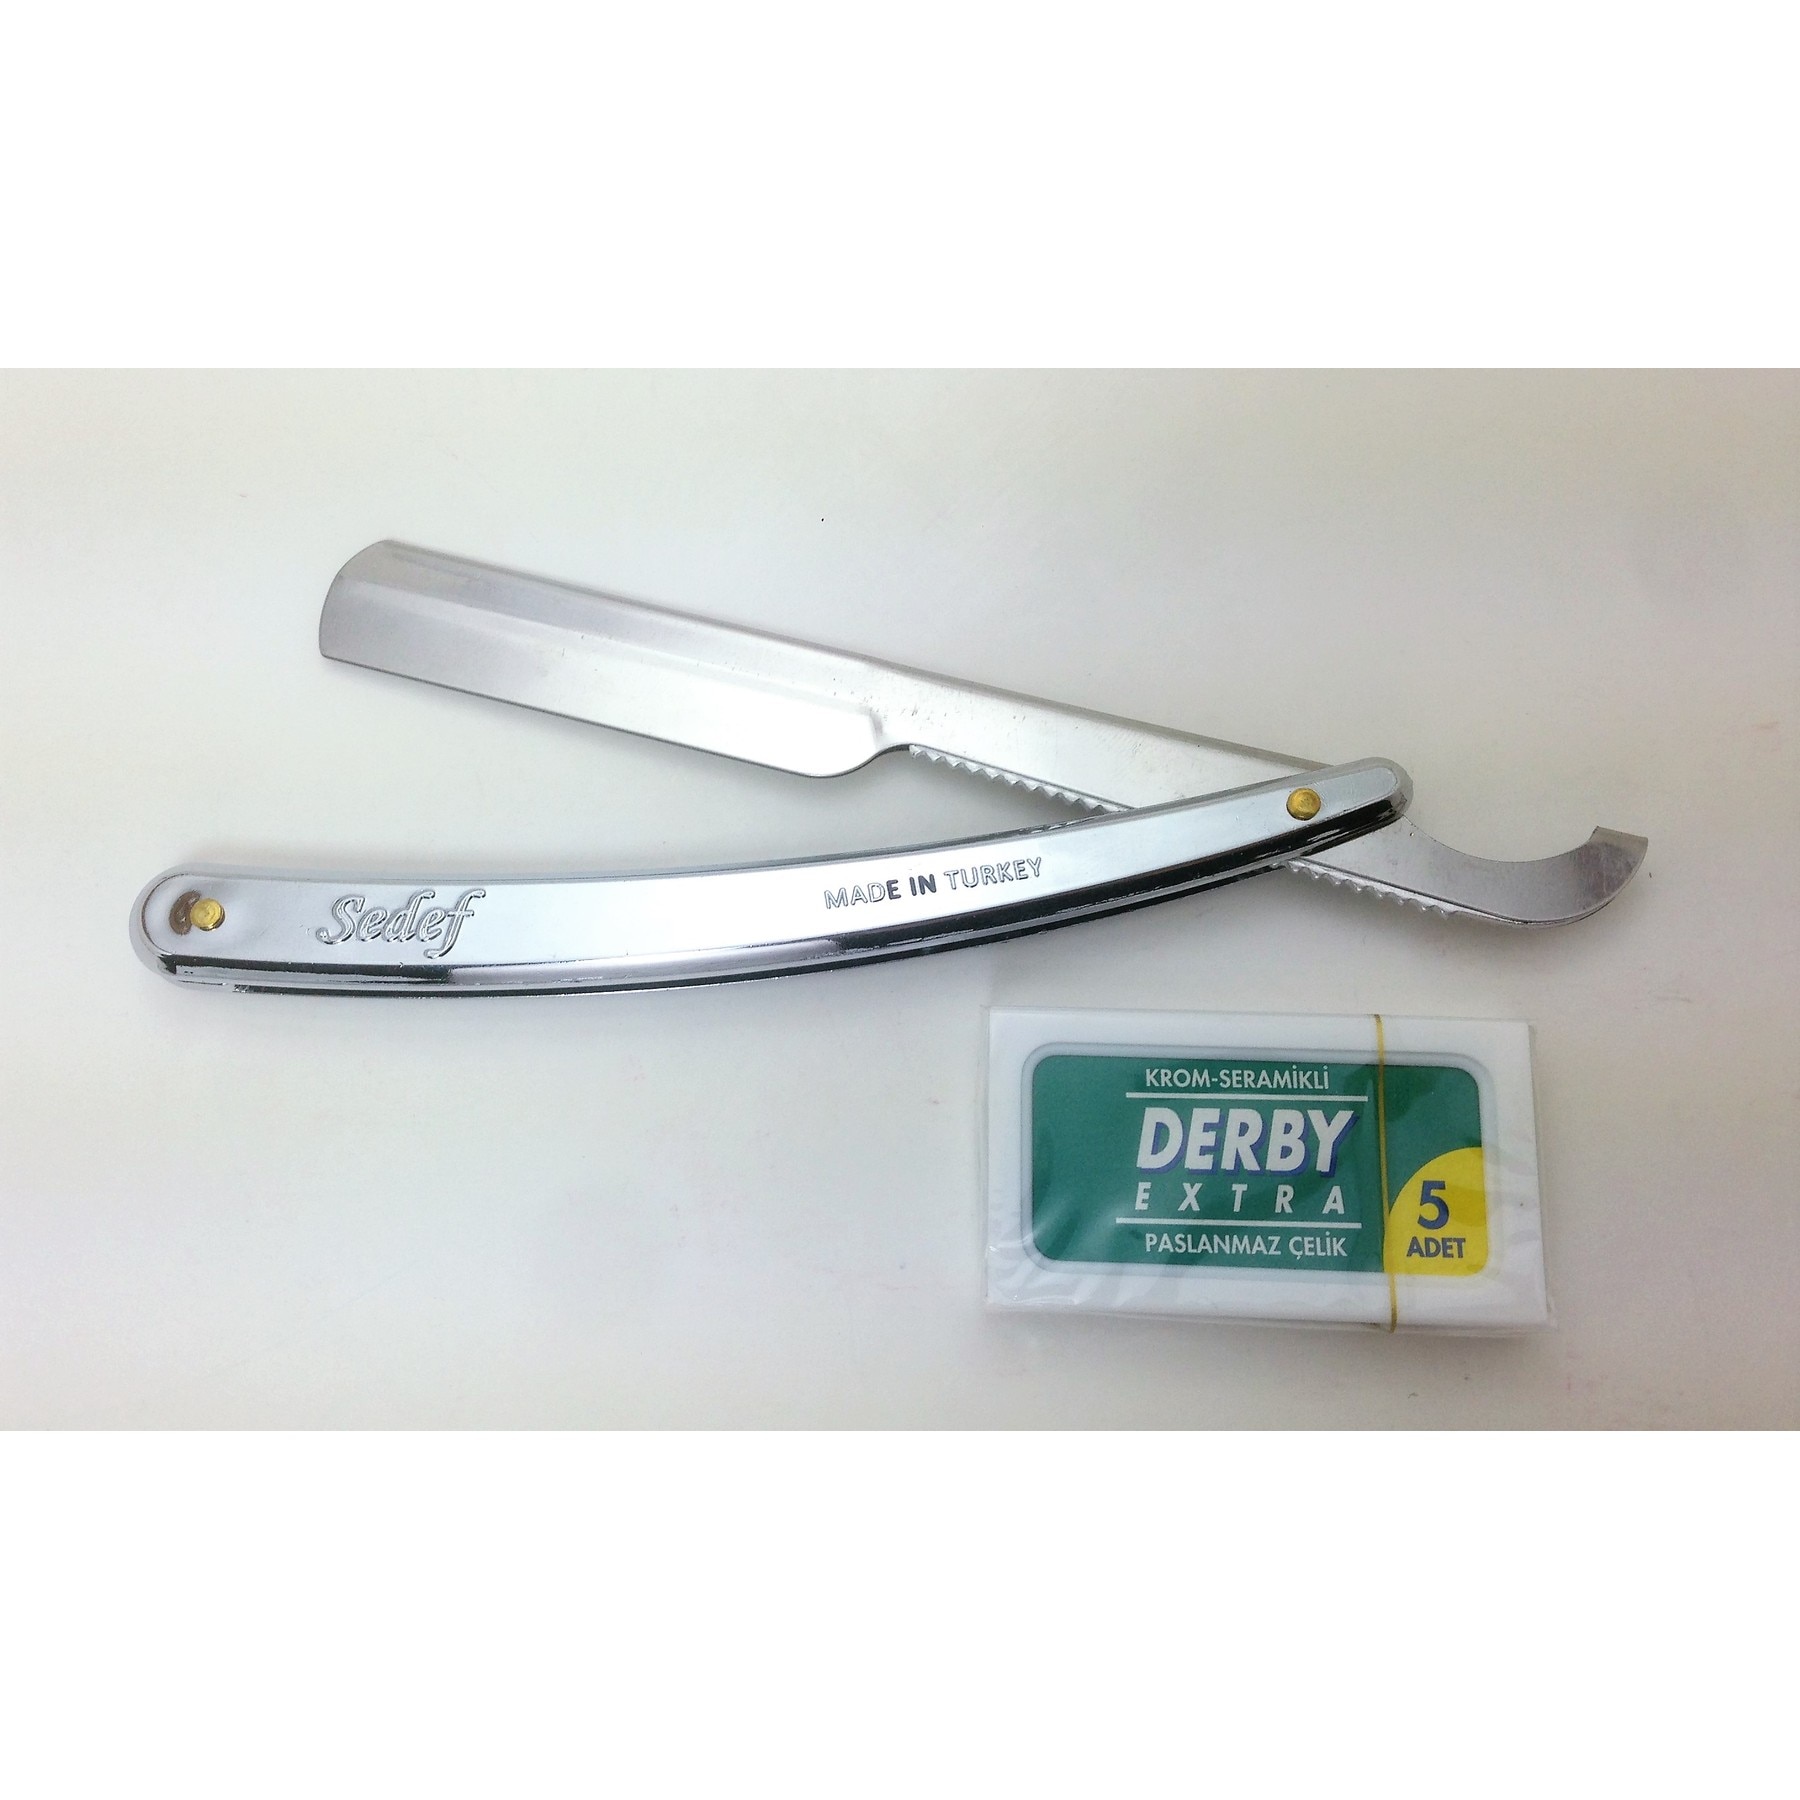 Chrome gecoat scheermes + 5 derby double edge blades-licht gewicht